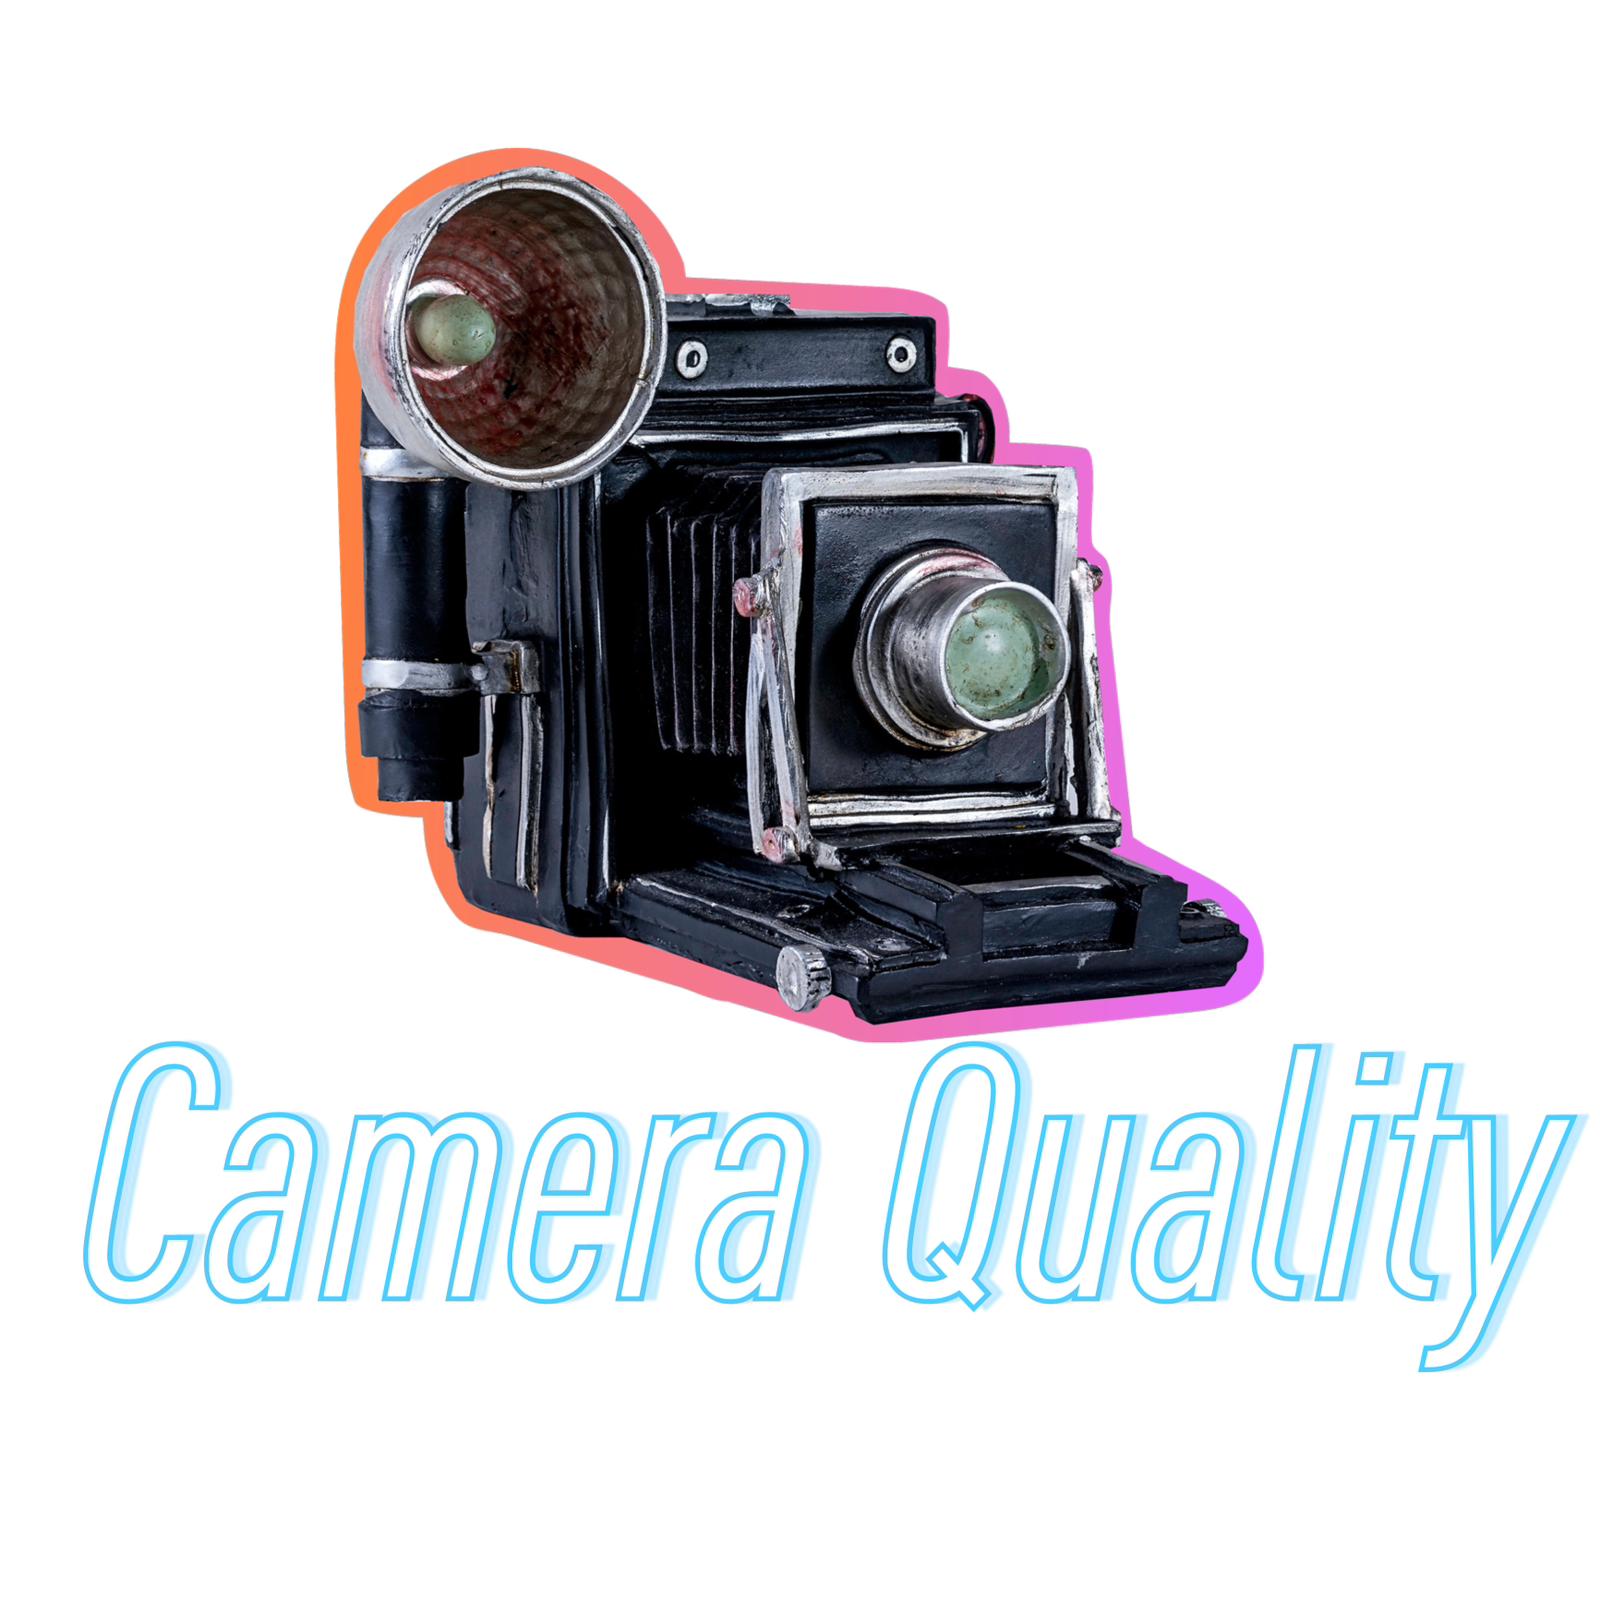 Camera: Capture High-Quality Videos